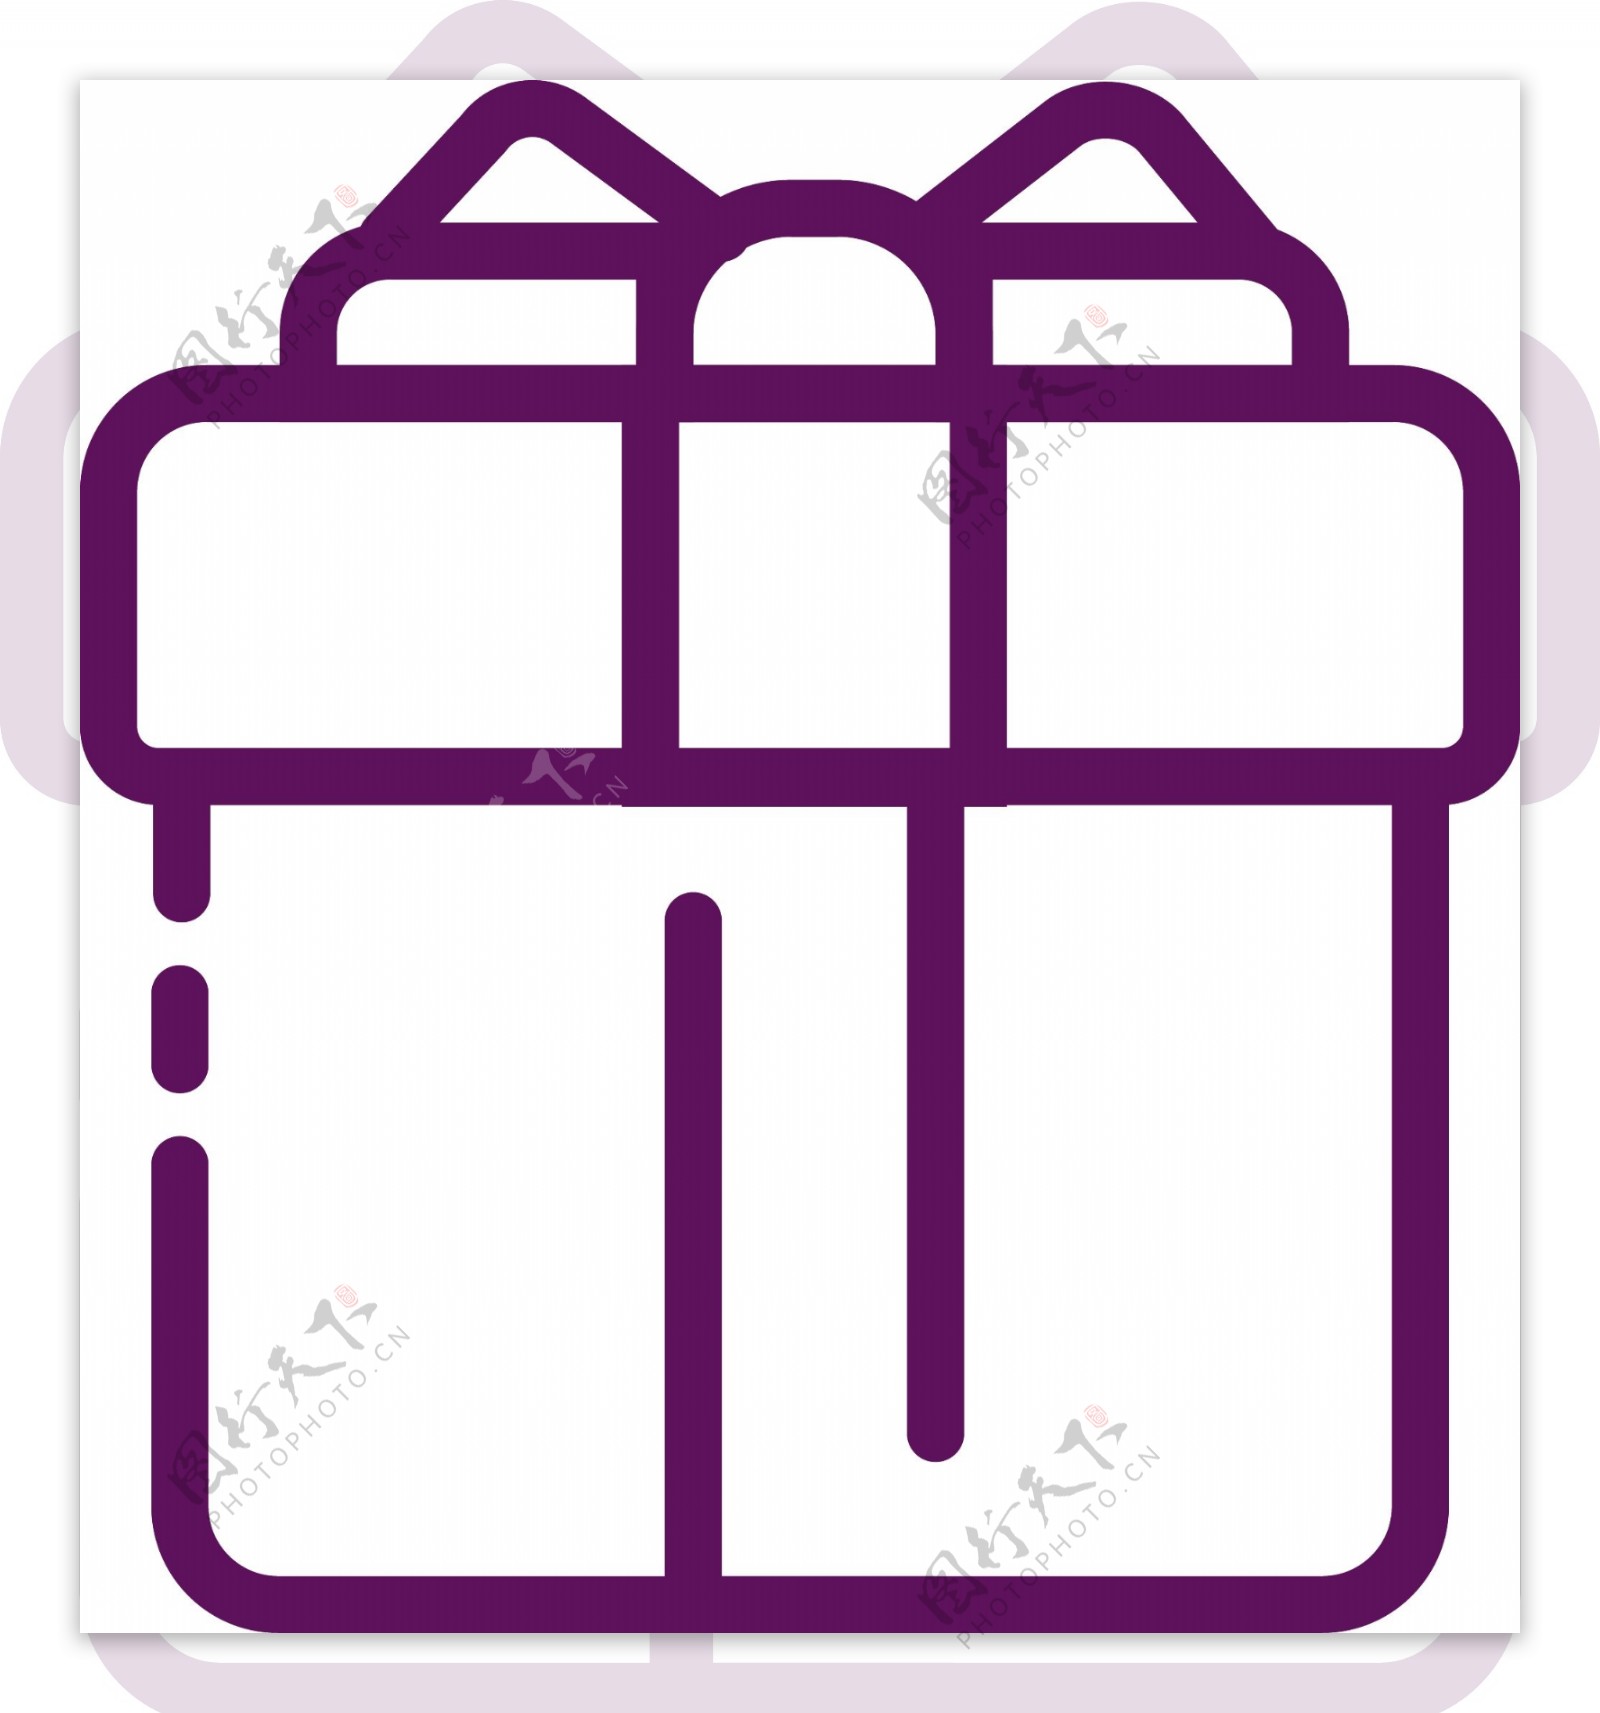 紫色圆角礼盒图标元素